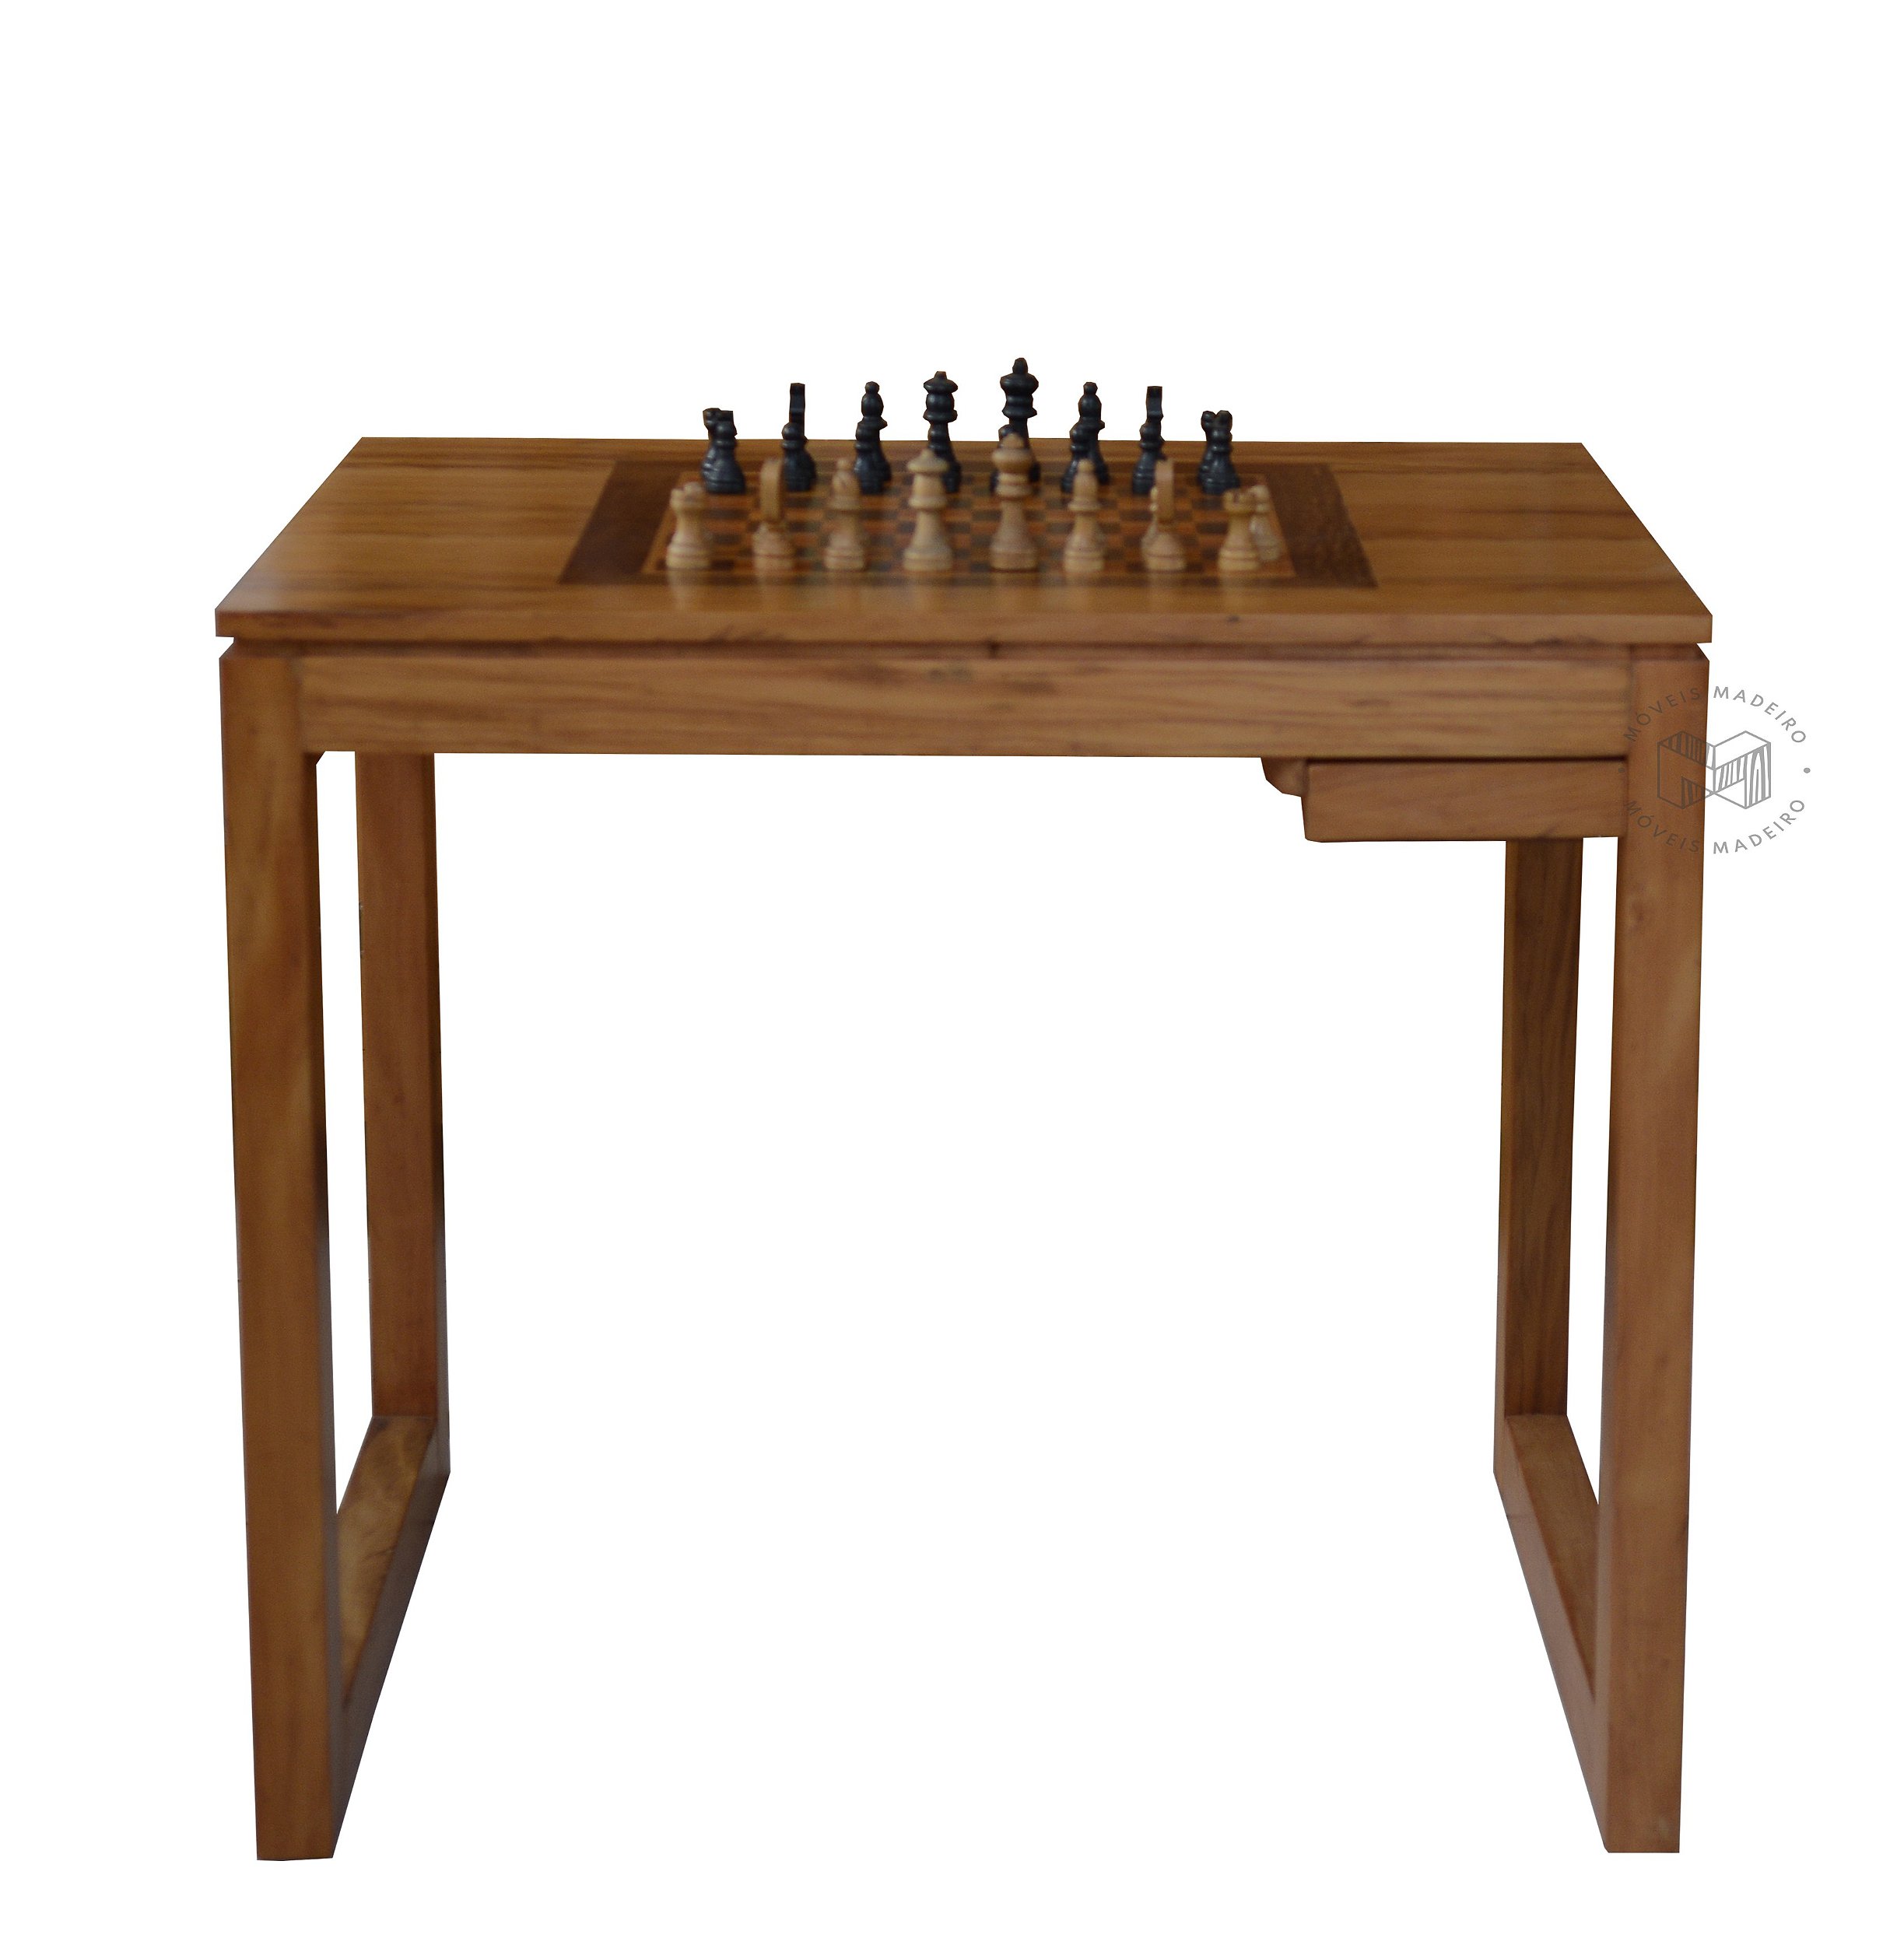 Jogo de xadrez produzido em madeira, medidas do tabulei